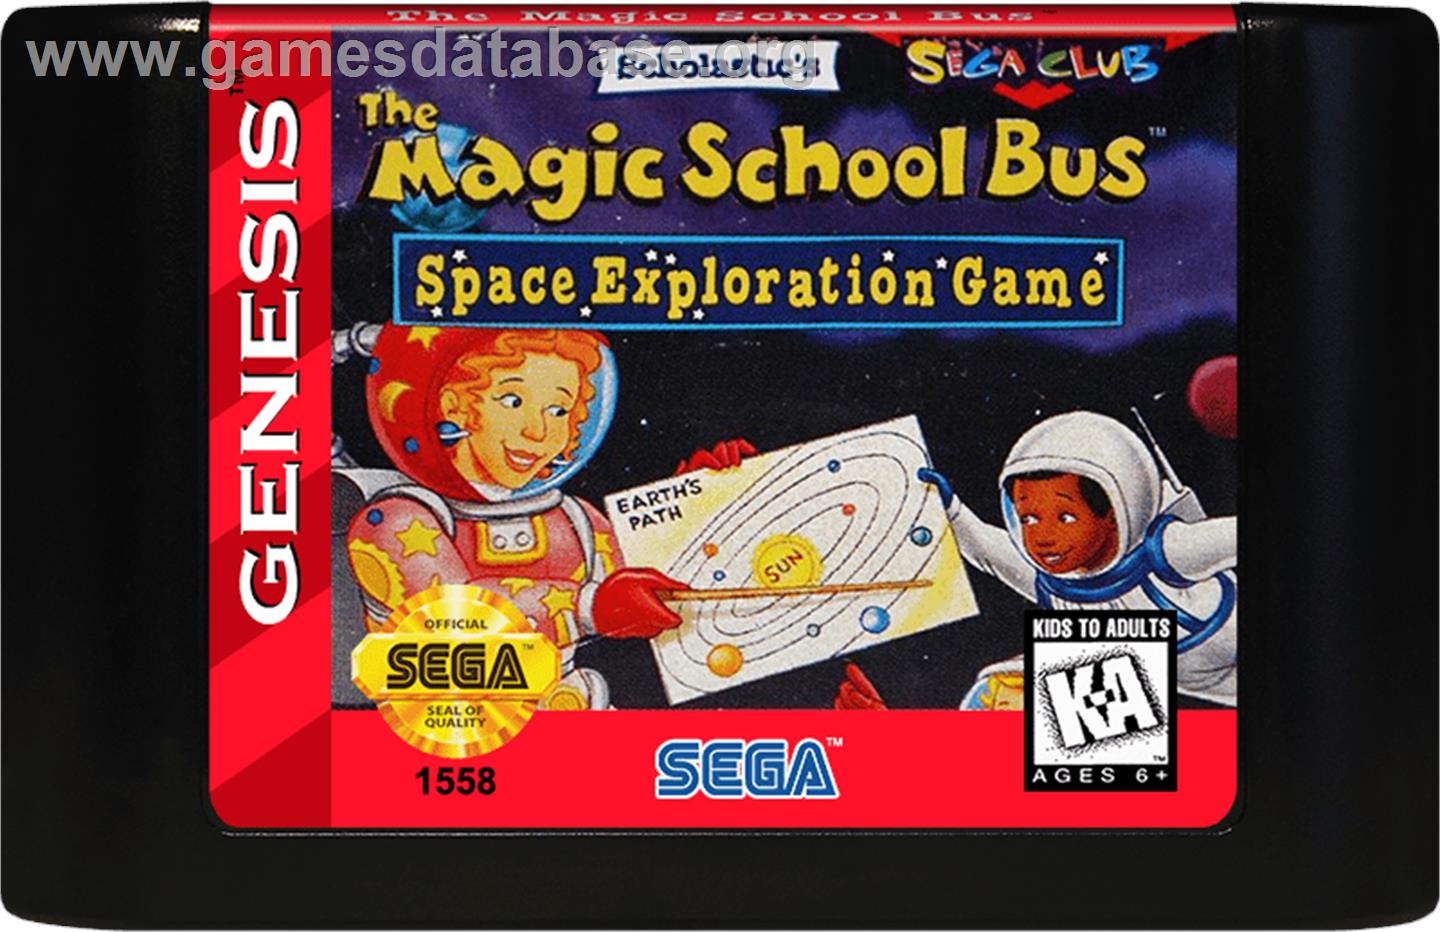 Magic School Bus, The - Sega Genesis - Artwork - Cartridge